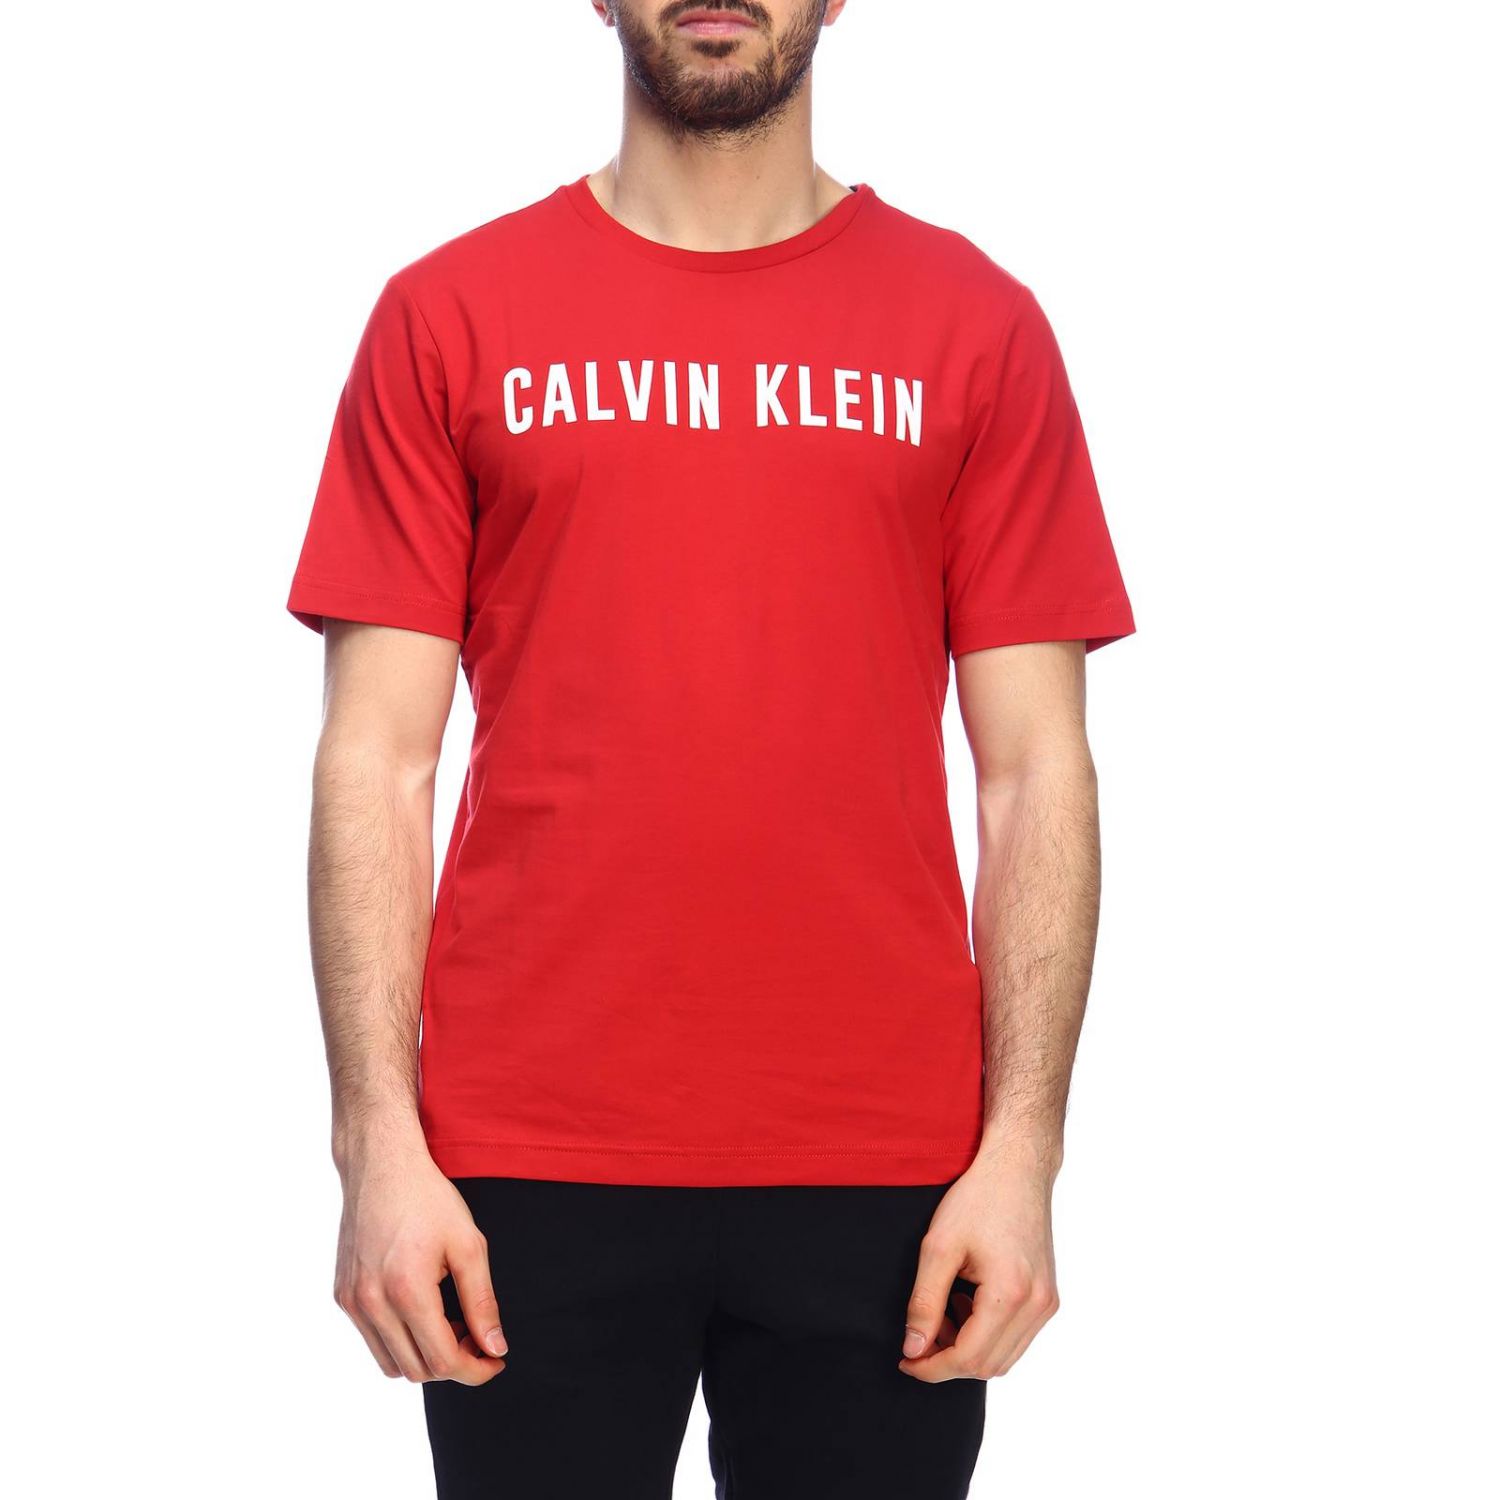 Calvin Klein Performance Outlet: T-shirt men - Red | T-Shirt Calvin ...